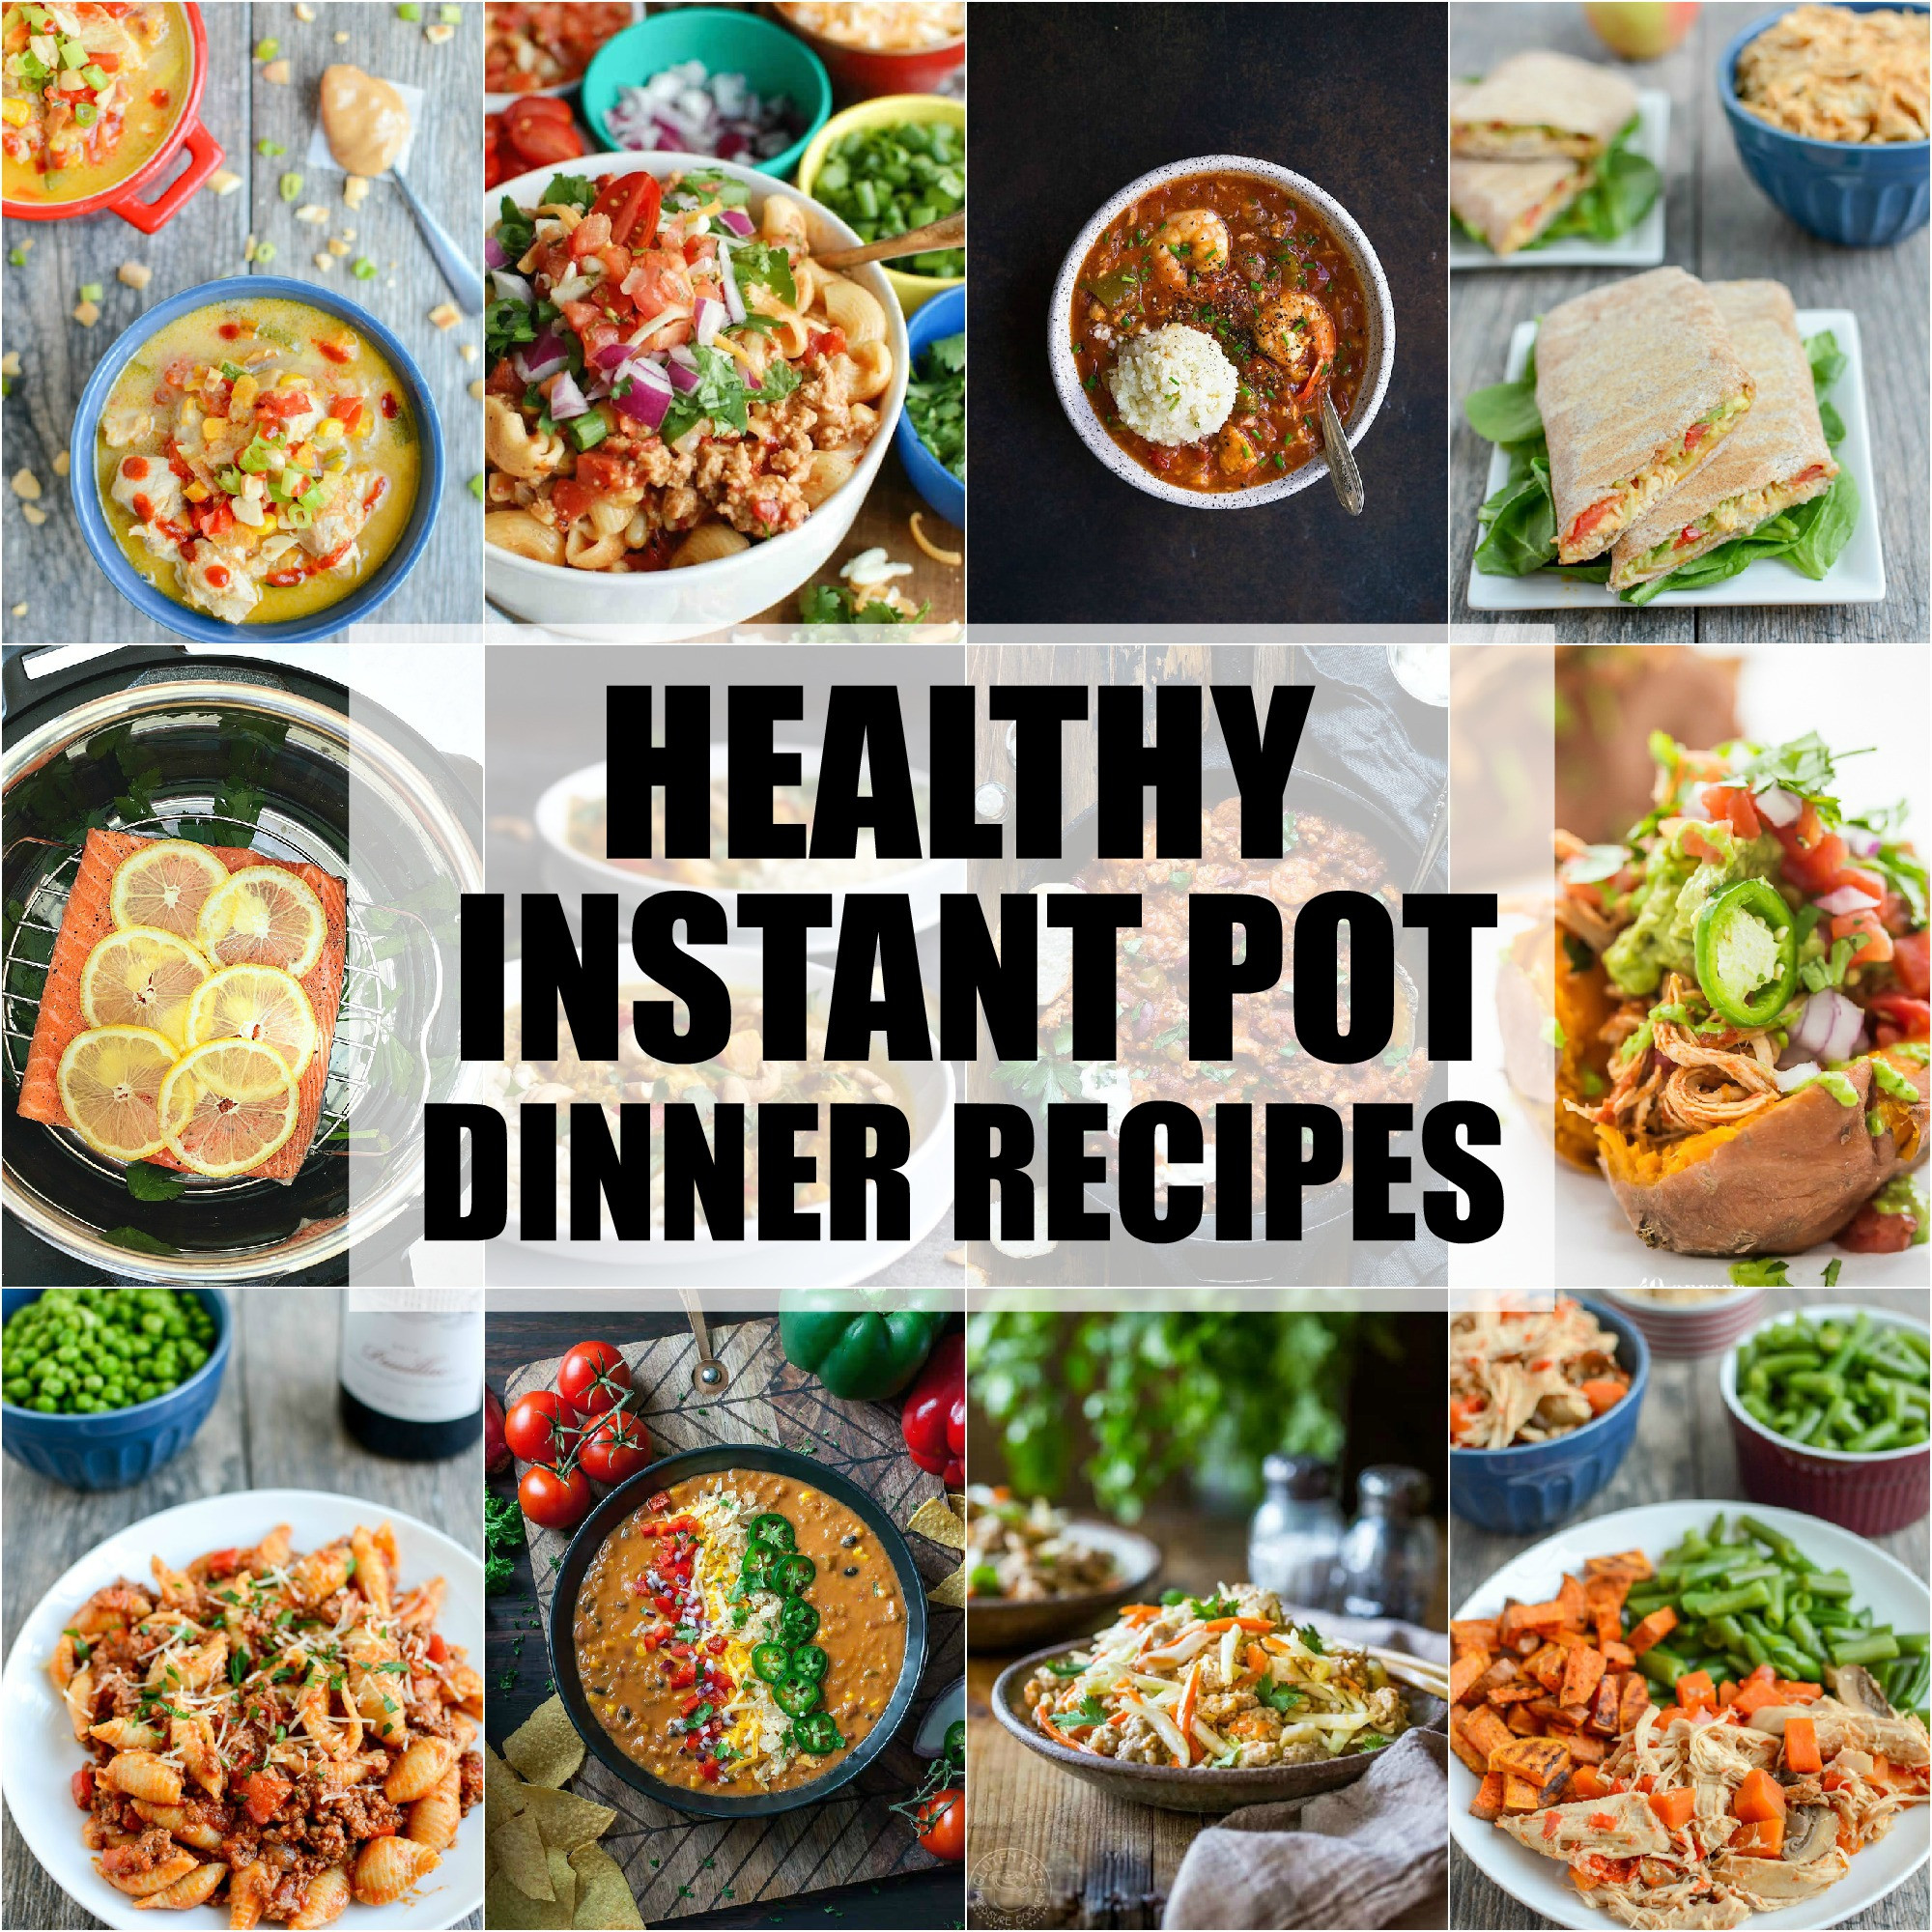 Instant Pot Healthy Recipes
 Healthy Instant Pot Dinner Recipes